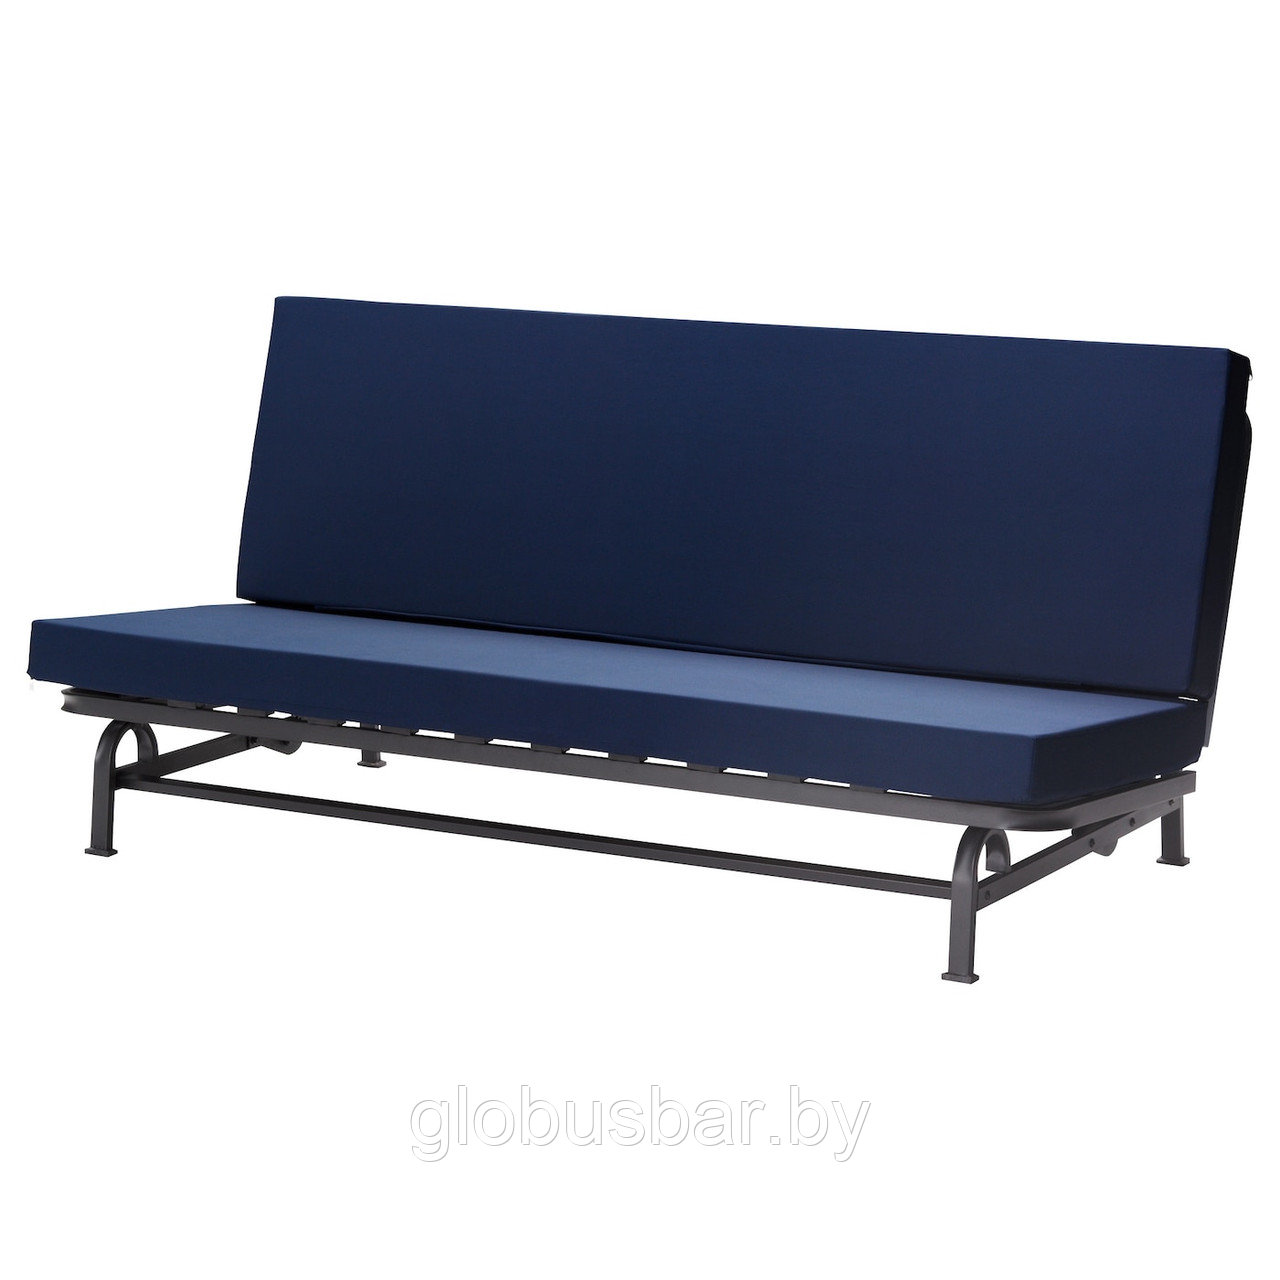 ЭКСАРБИ 3-местный диван-кровать, темно-синий, икеа